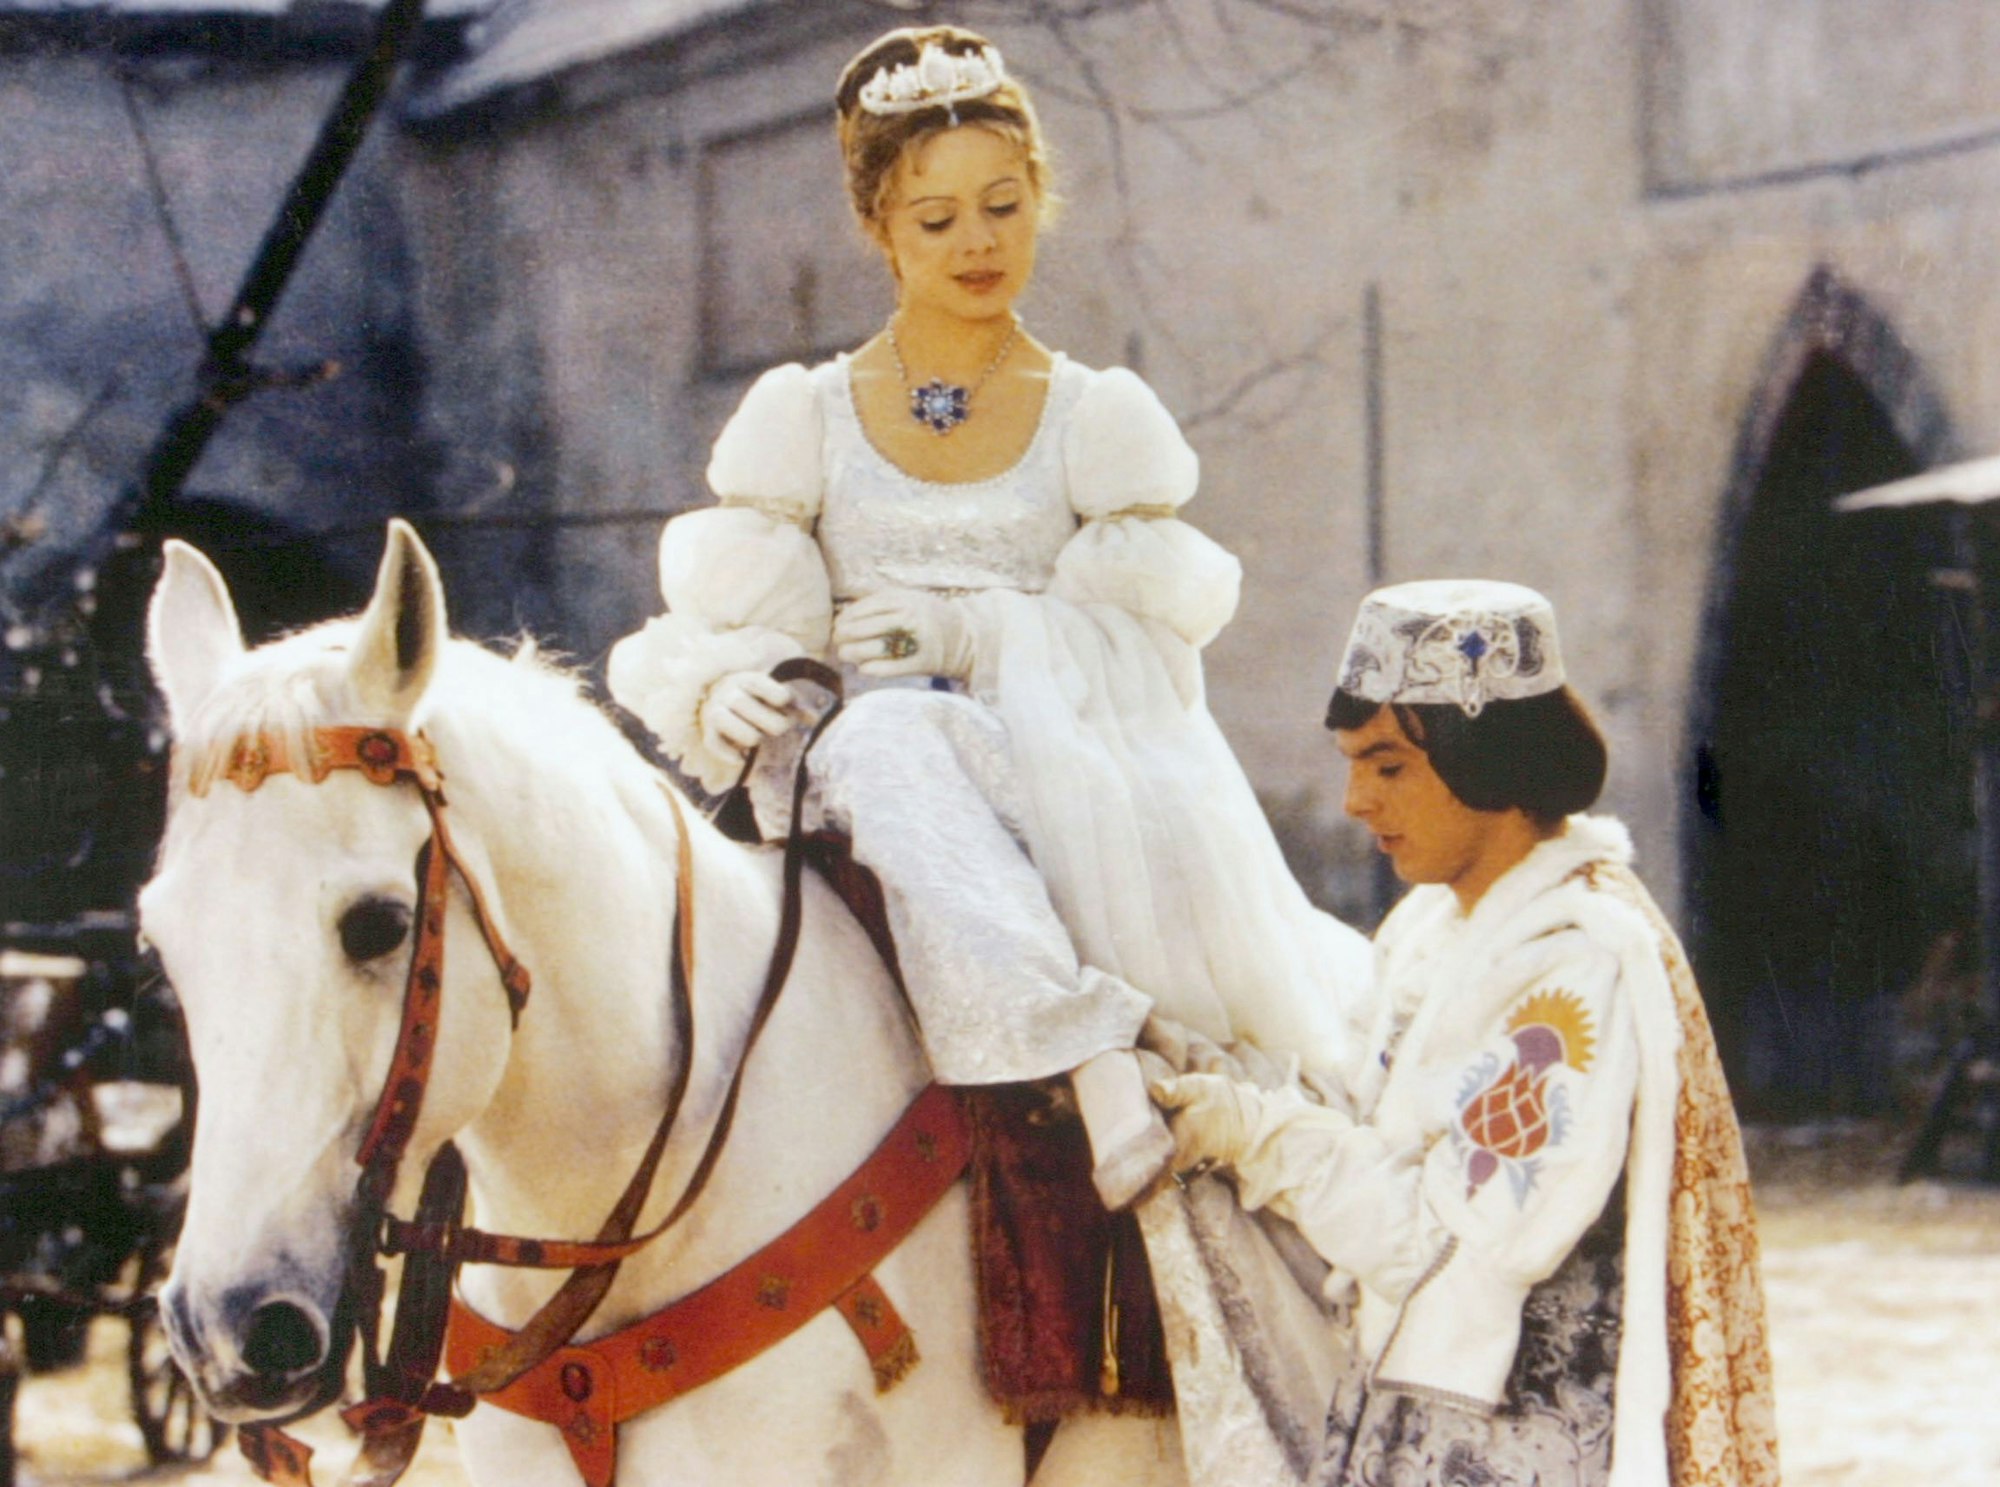 Der Prinz (Pavel Trávnícek) passt Aschenbrödel (Libuse Safránková) den verlorenen Schuh an in einer Szene aus „Drei Haselnüsse für Aschenbrödel“ .